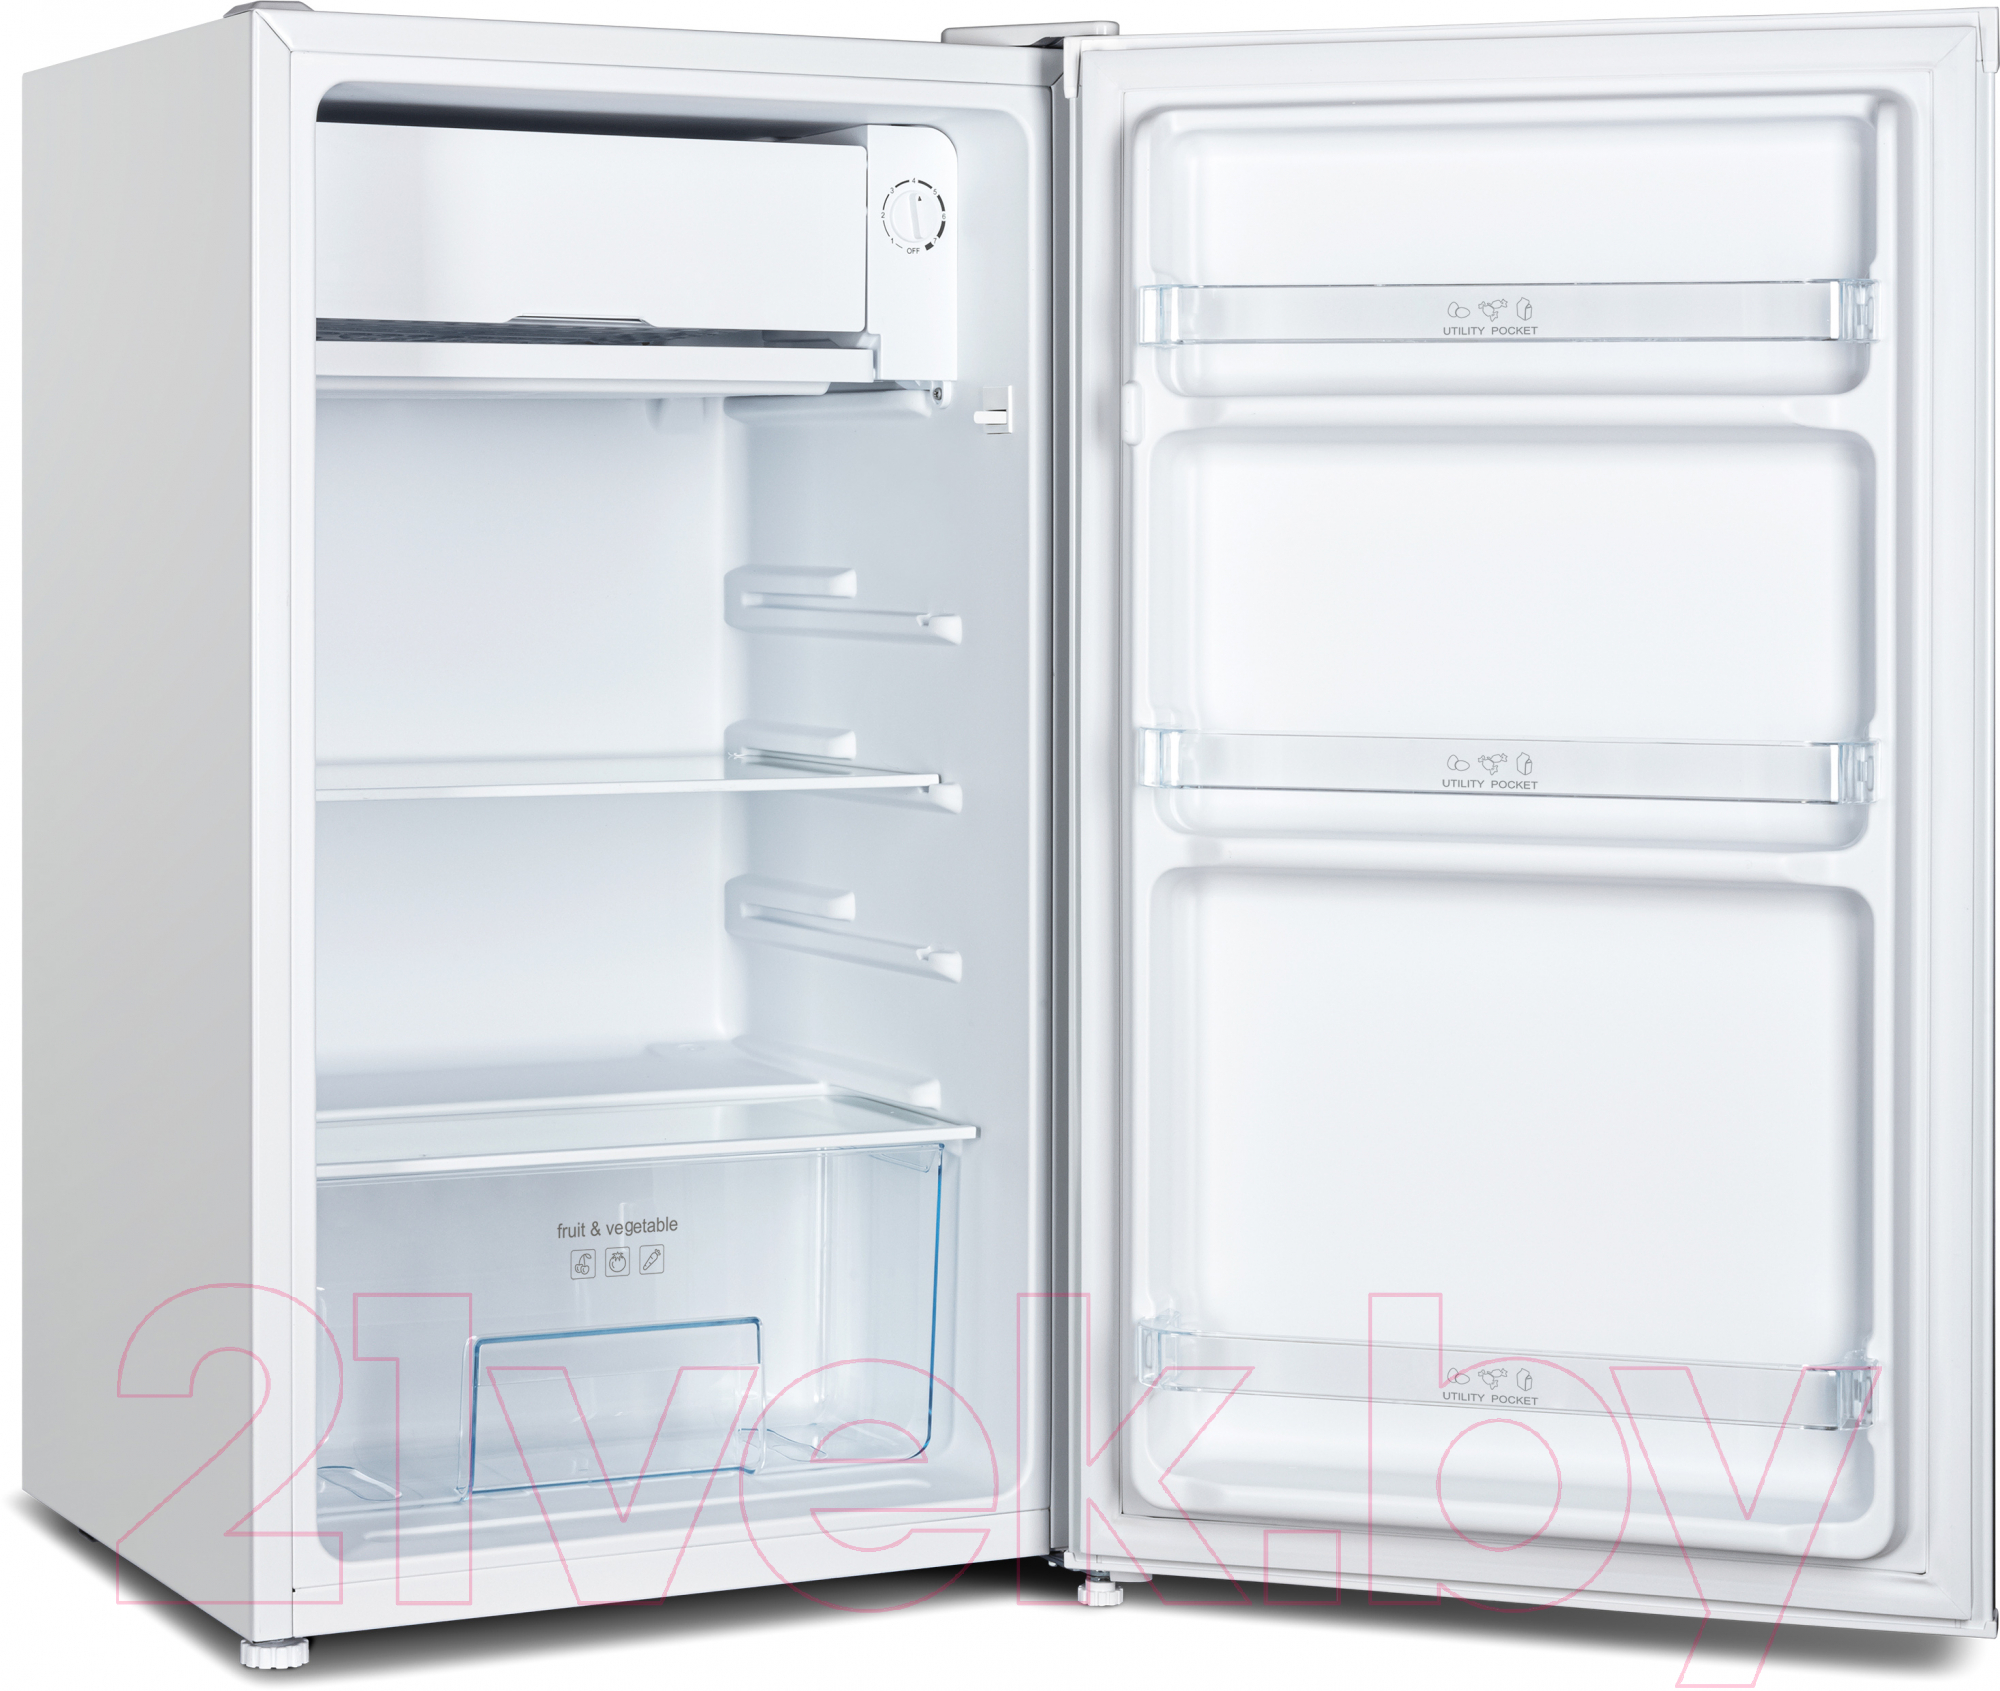 Холодильник с морозильником Nordfrost RF 90 W